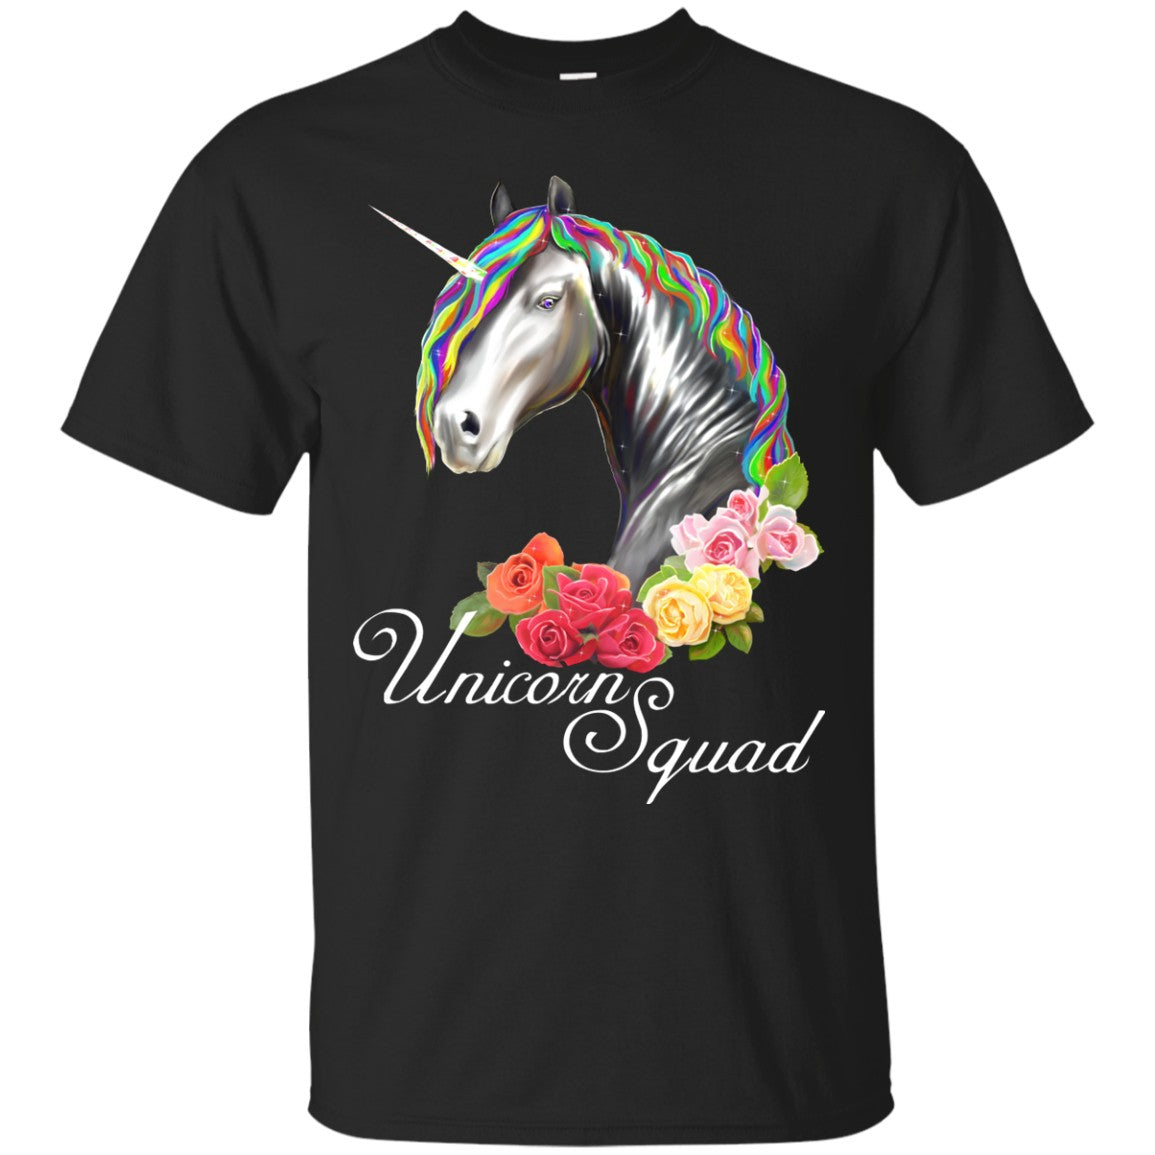 Unicorn Squad Shirt for Women - GoneBold.gift